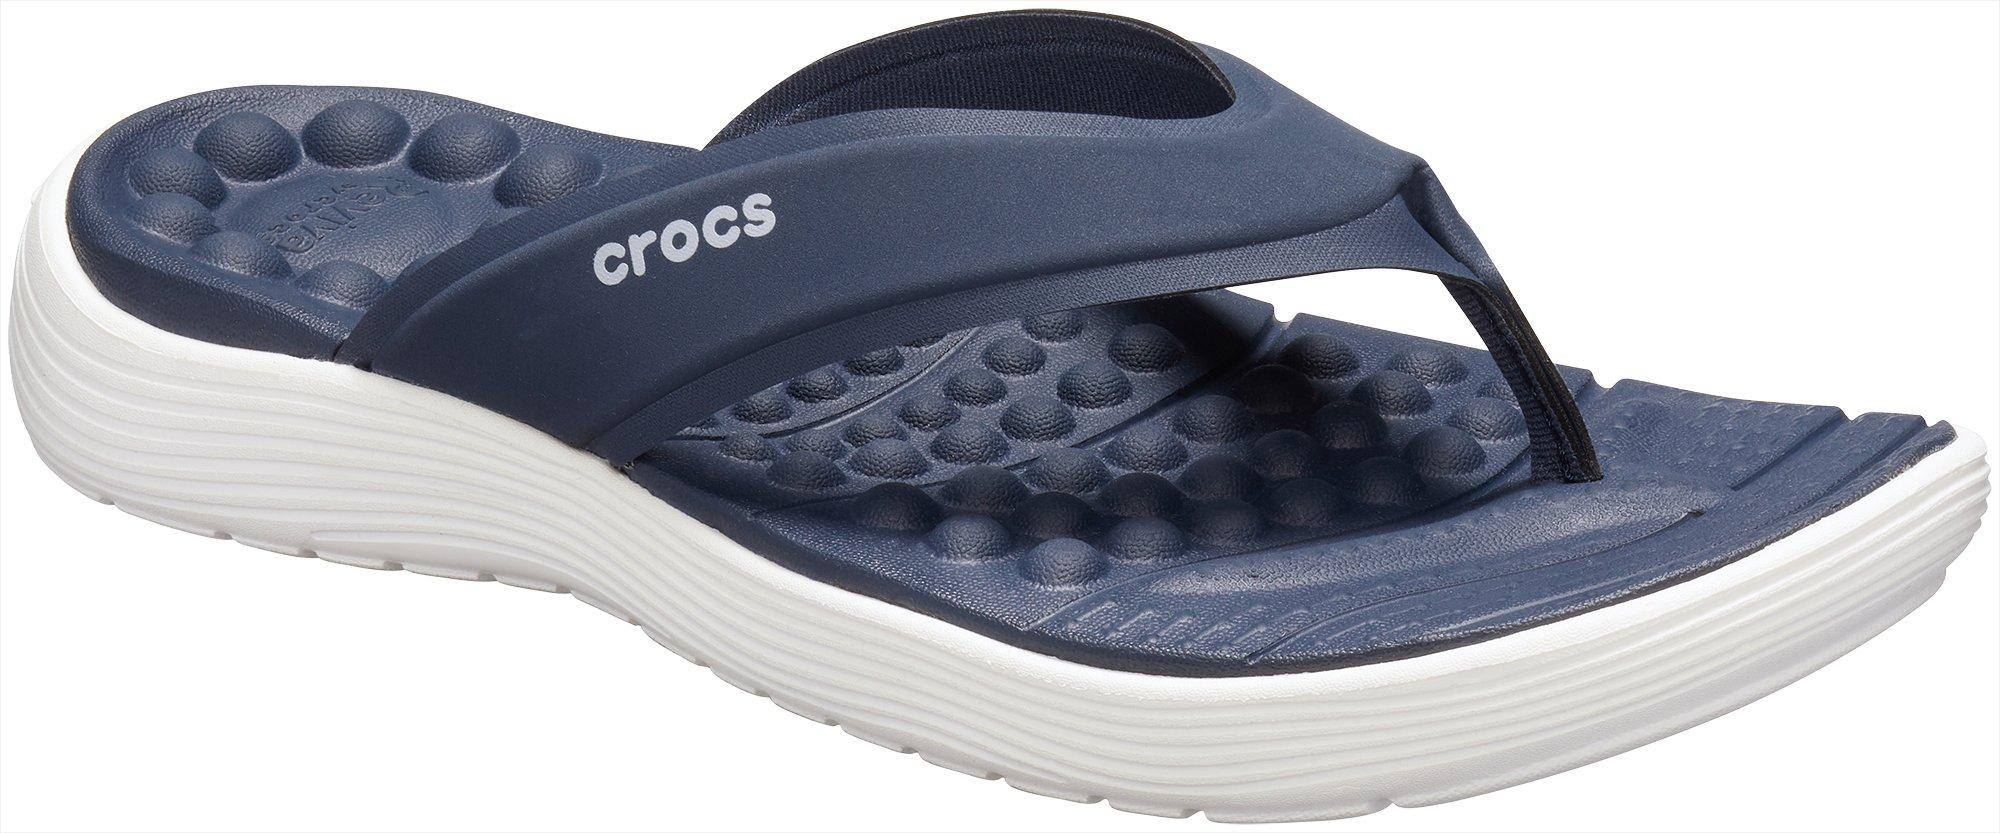 buy crocs flip flops online